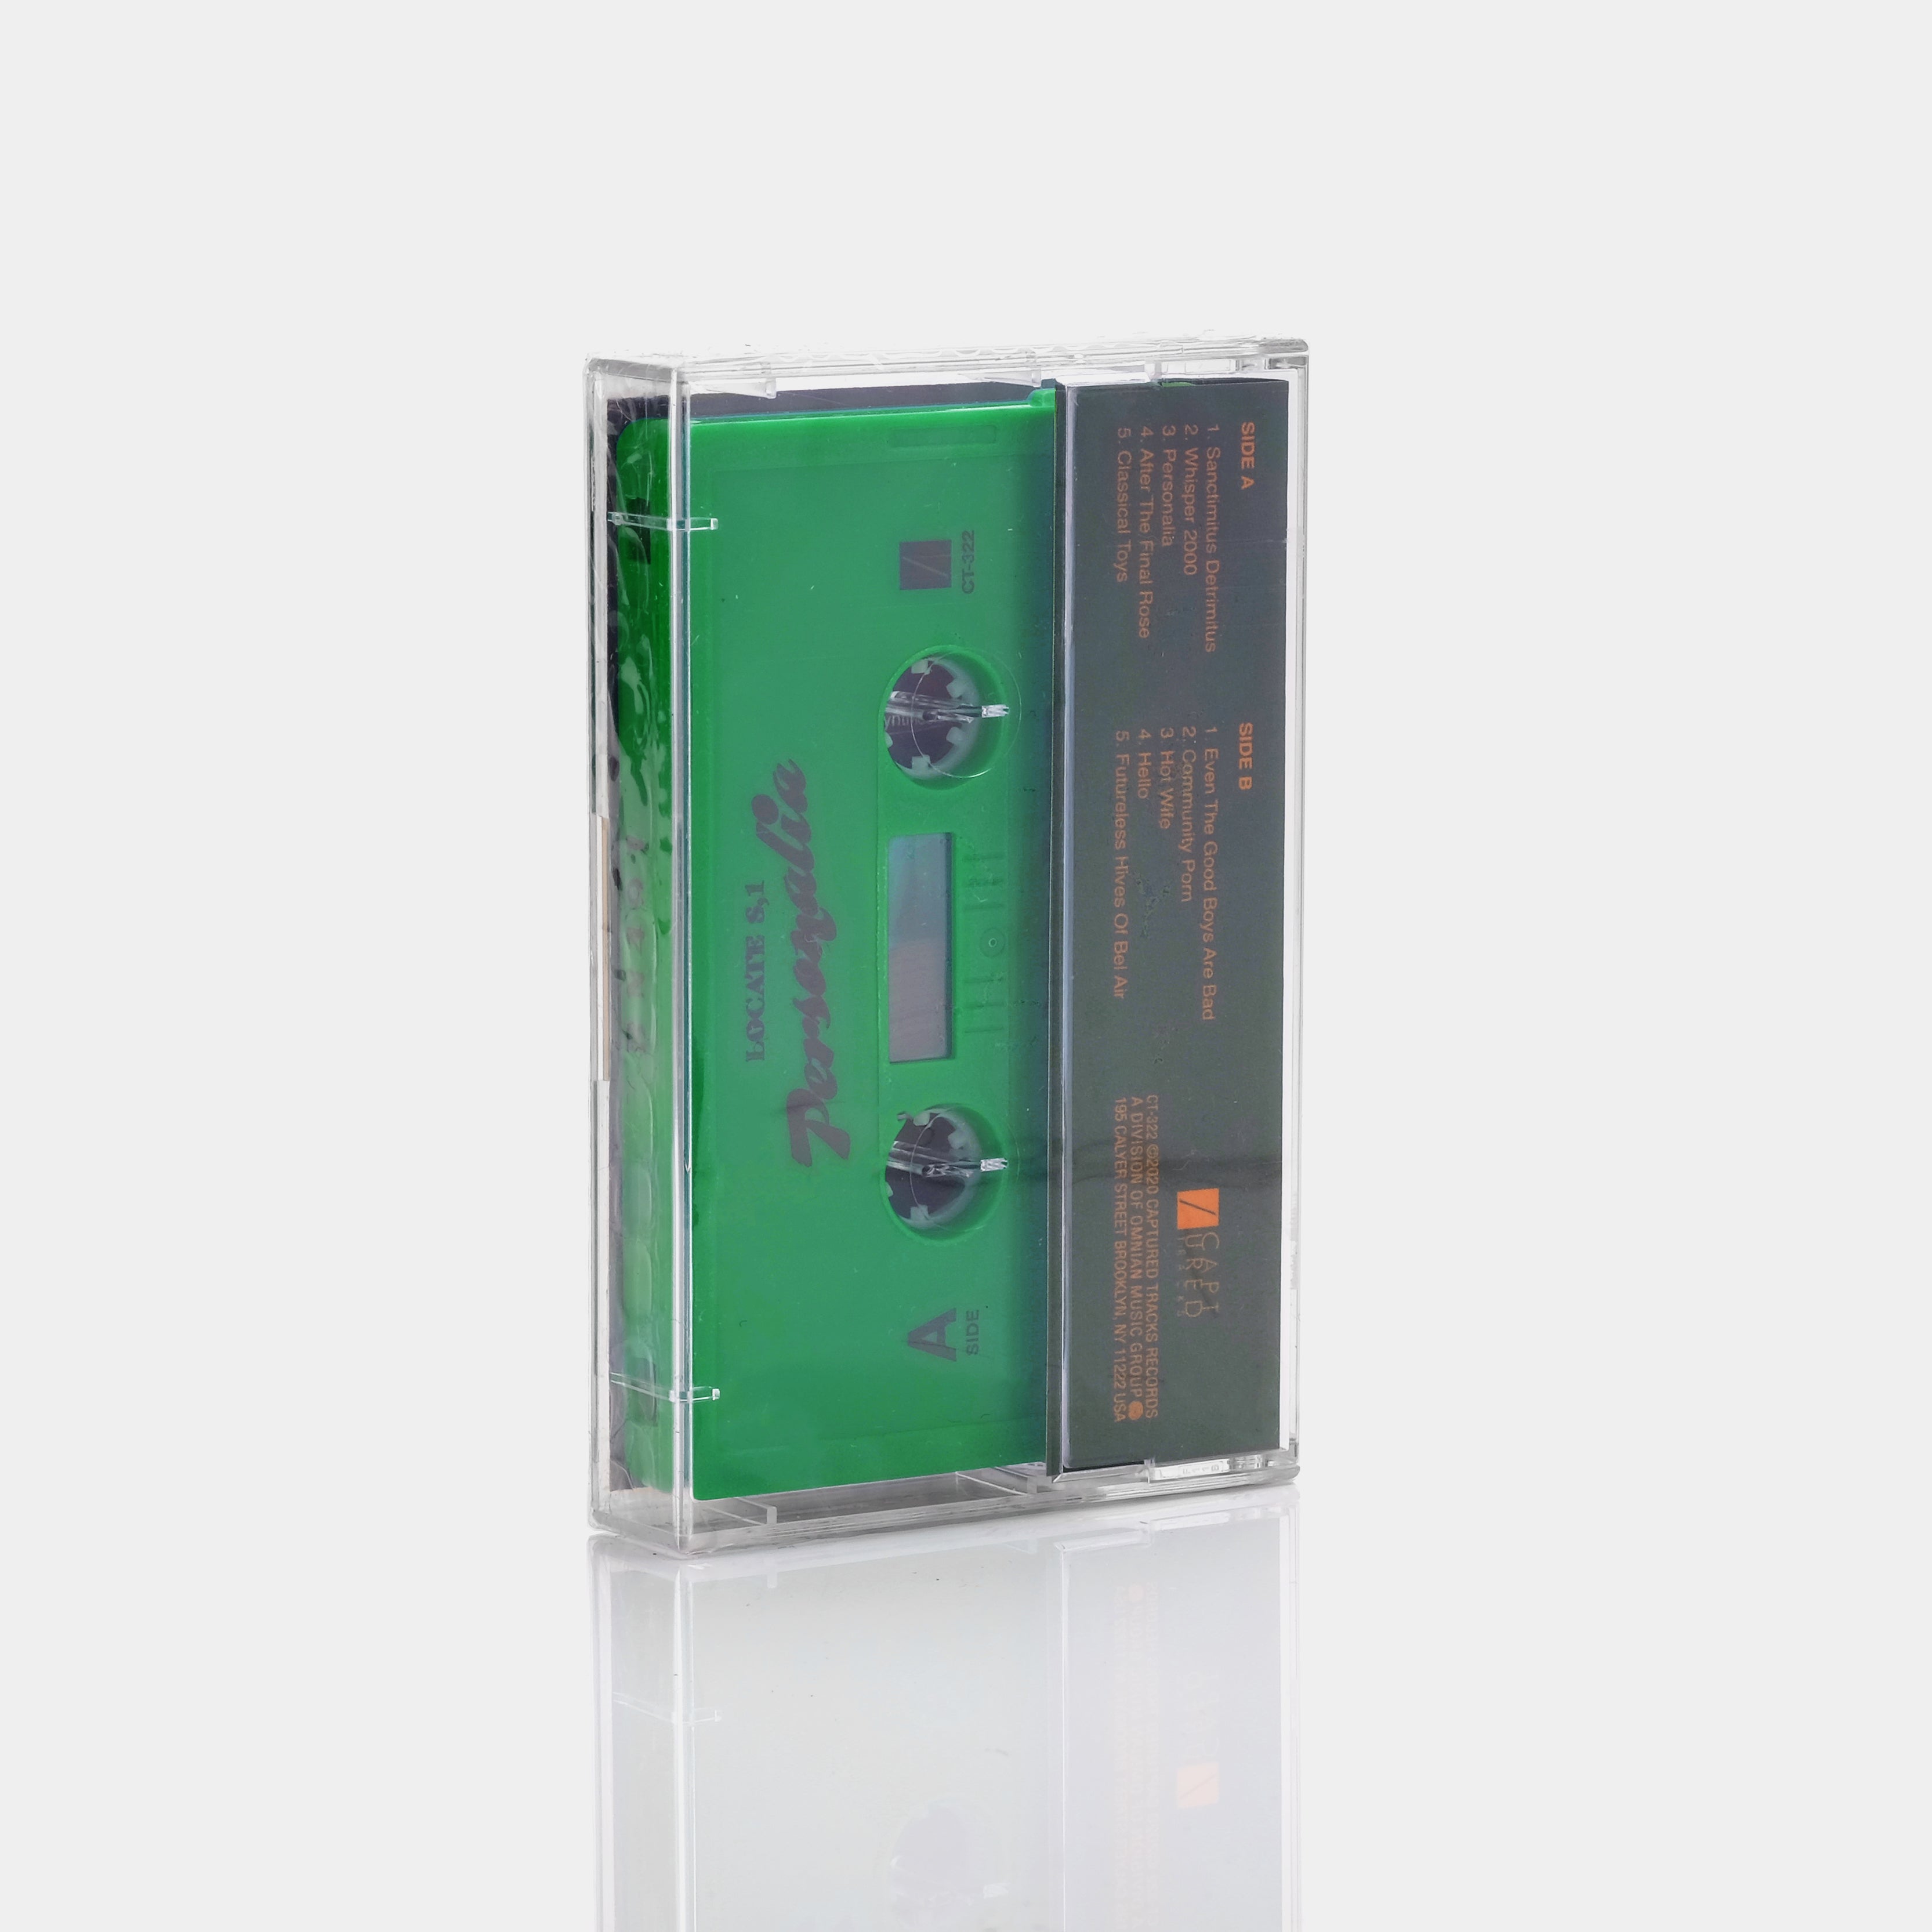 Locate S,1 - Personalia Cassette Tape